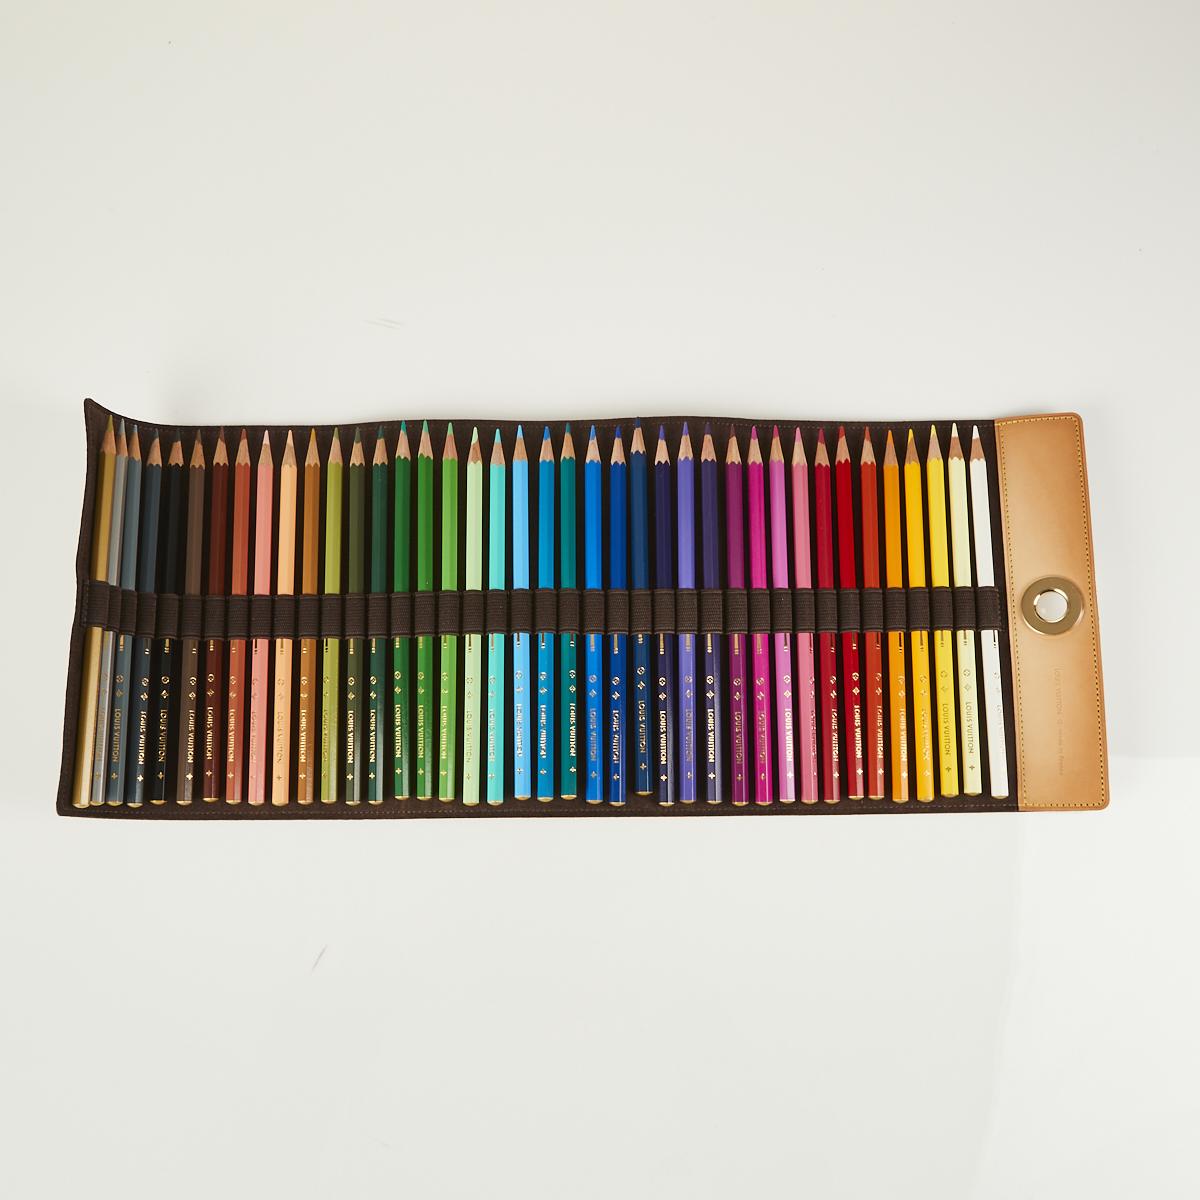 Louis Vuitton Colored Pencils Case